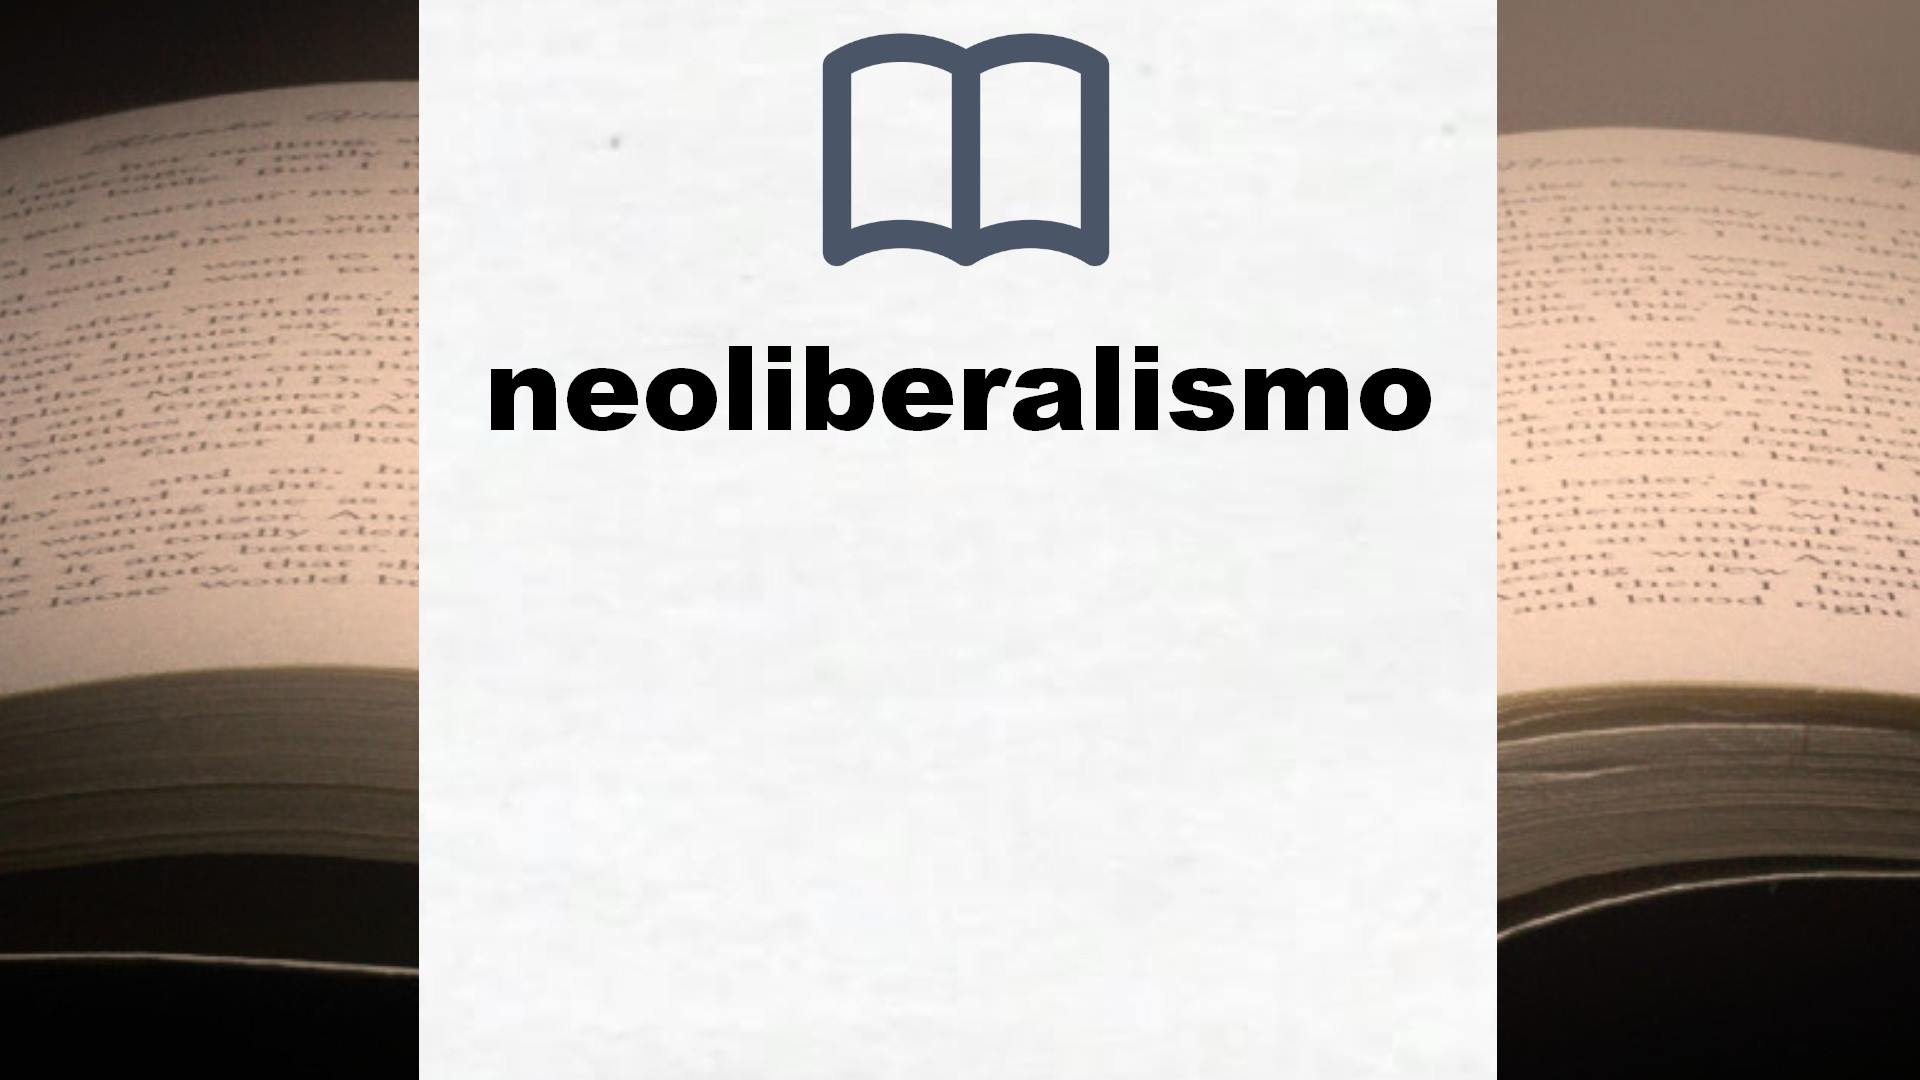 Libros sobre neoliberalismo